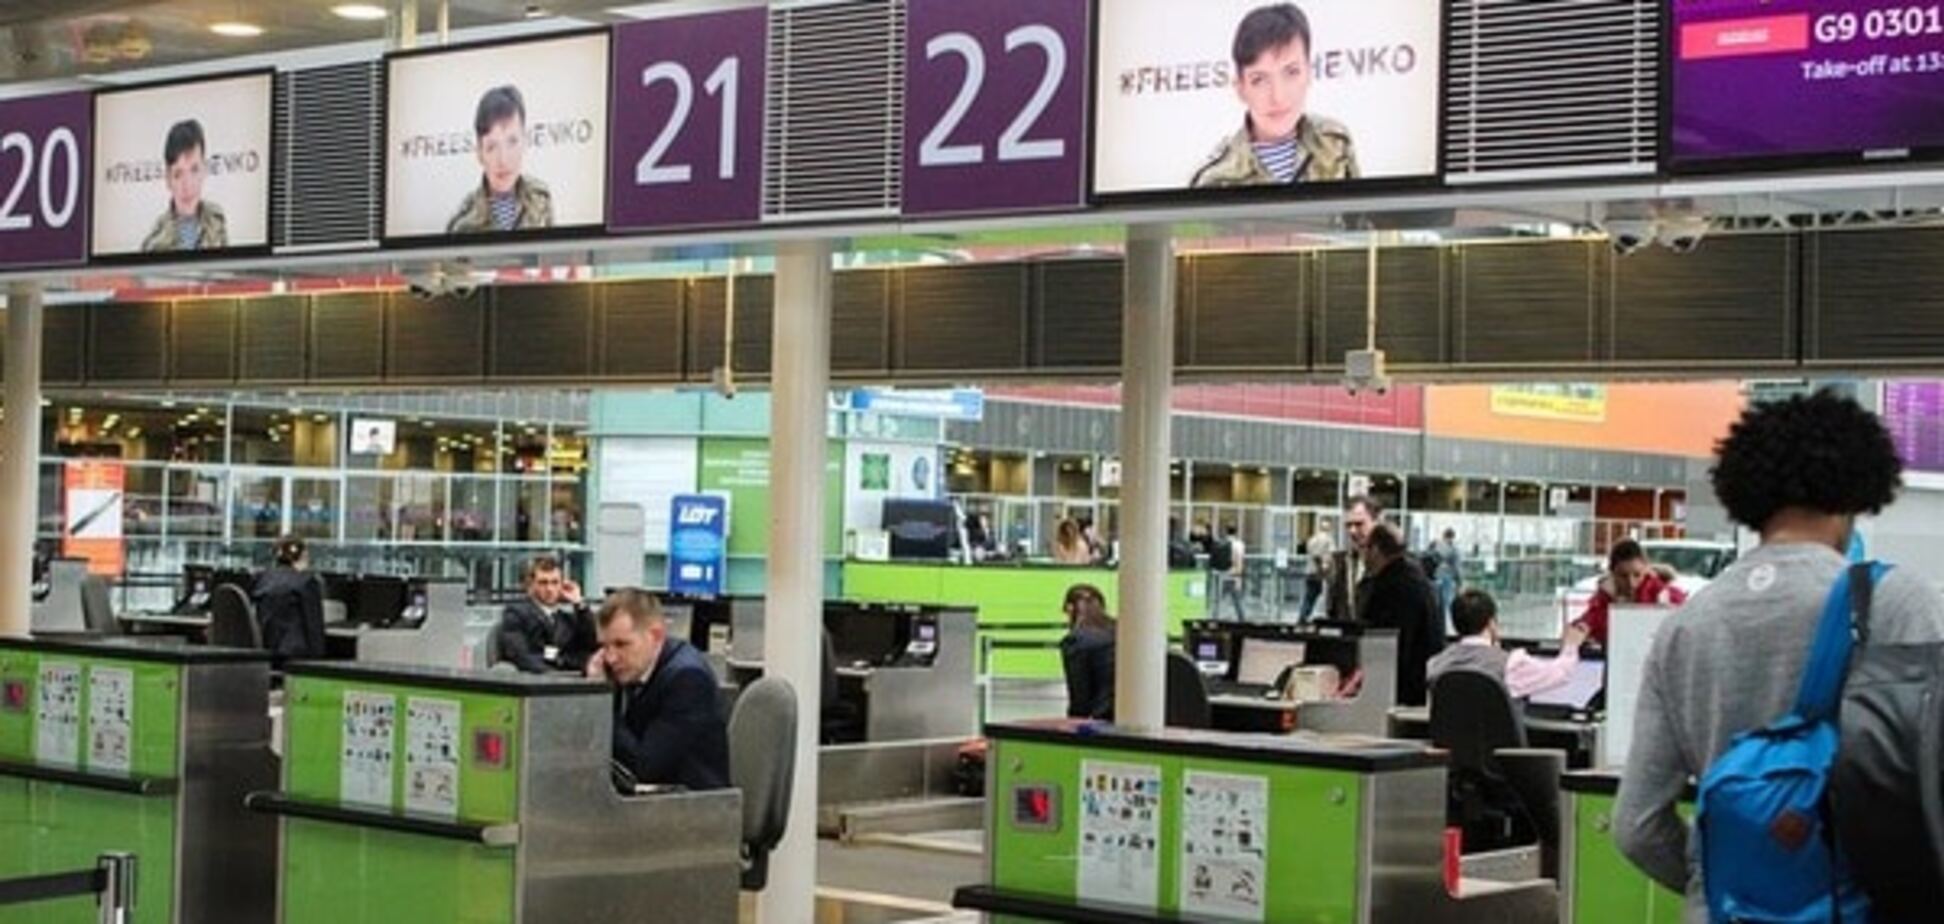 Украина – с Надеждой: аэропорт 'Борисполь' поддержал акцию #FreeSavchenko